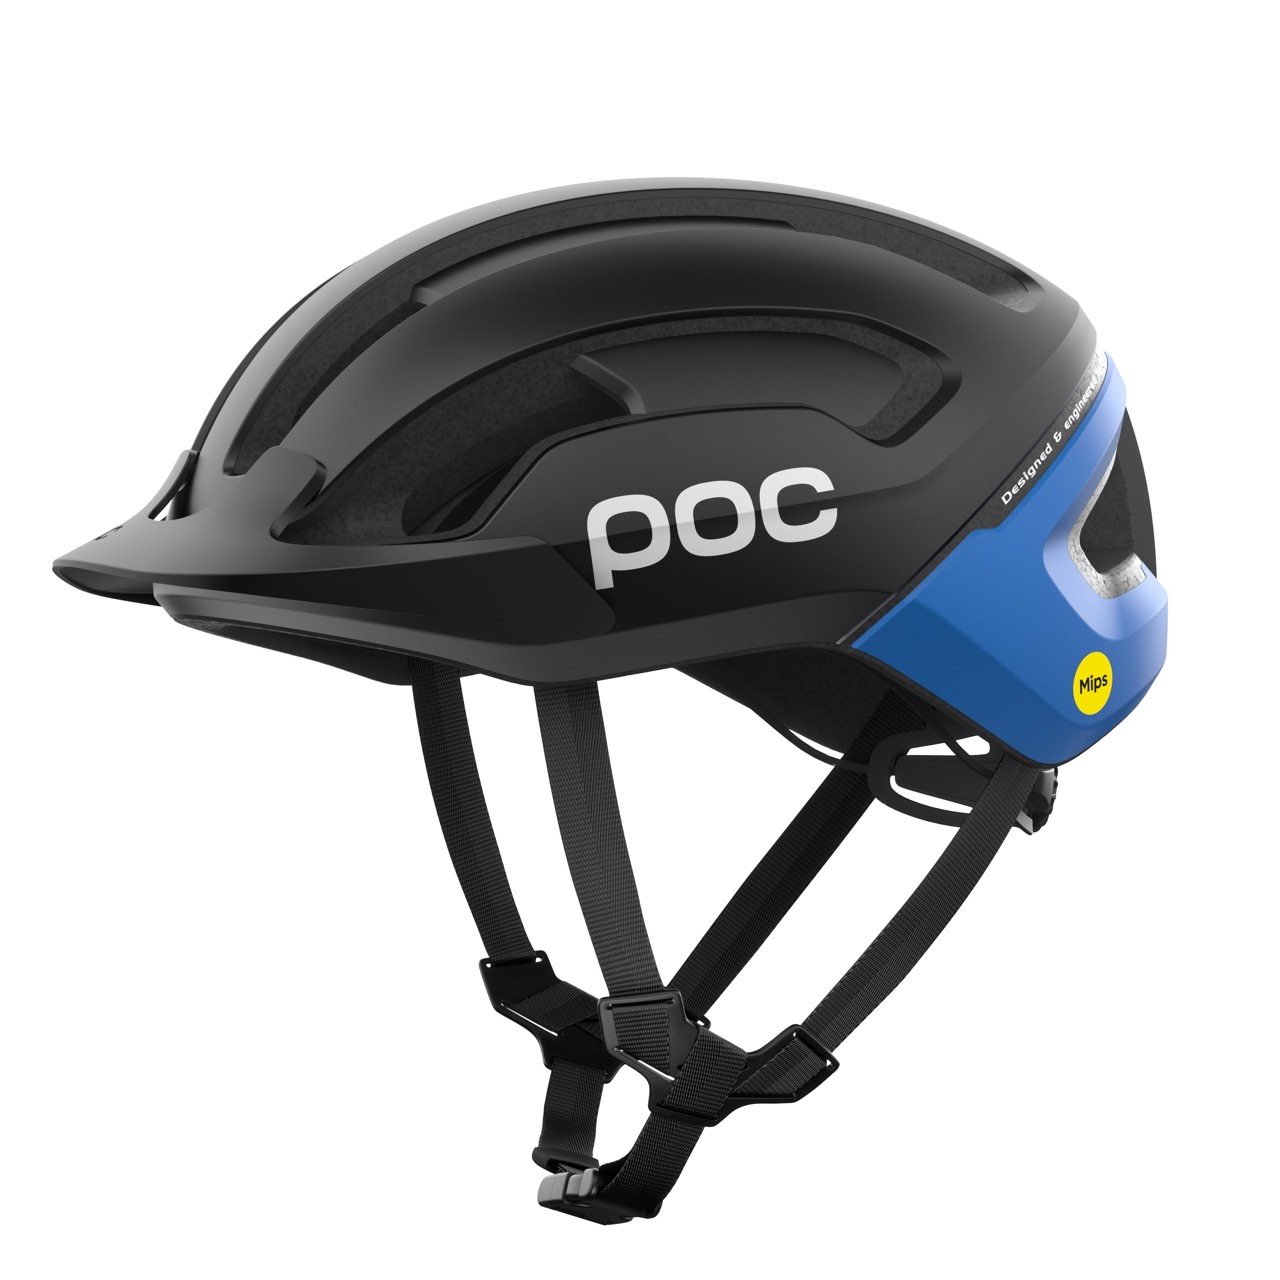 POC Omne Air MIPS helmet in black and blue